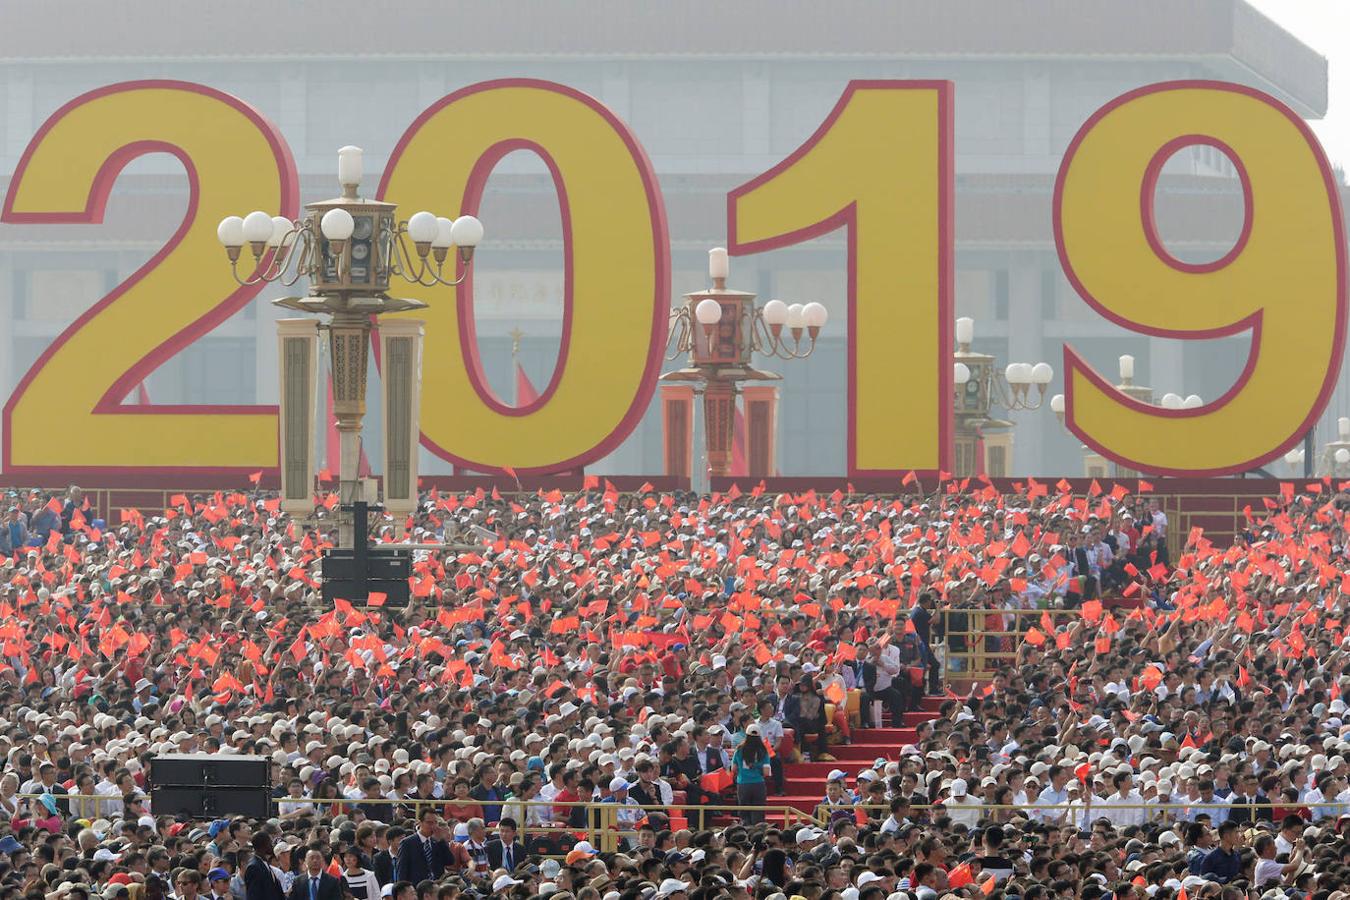 El 70º aniversario de China contó con una gran afluencia de público en la plaza de Tiananmen. 